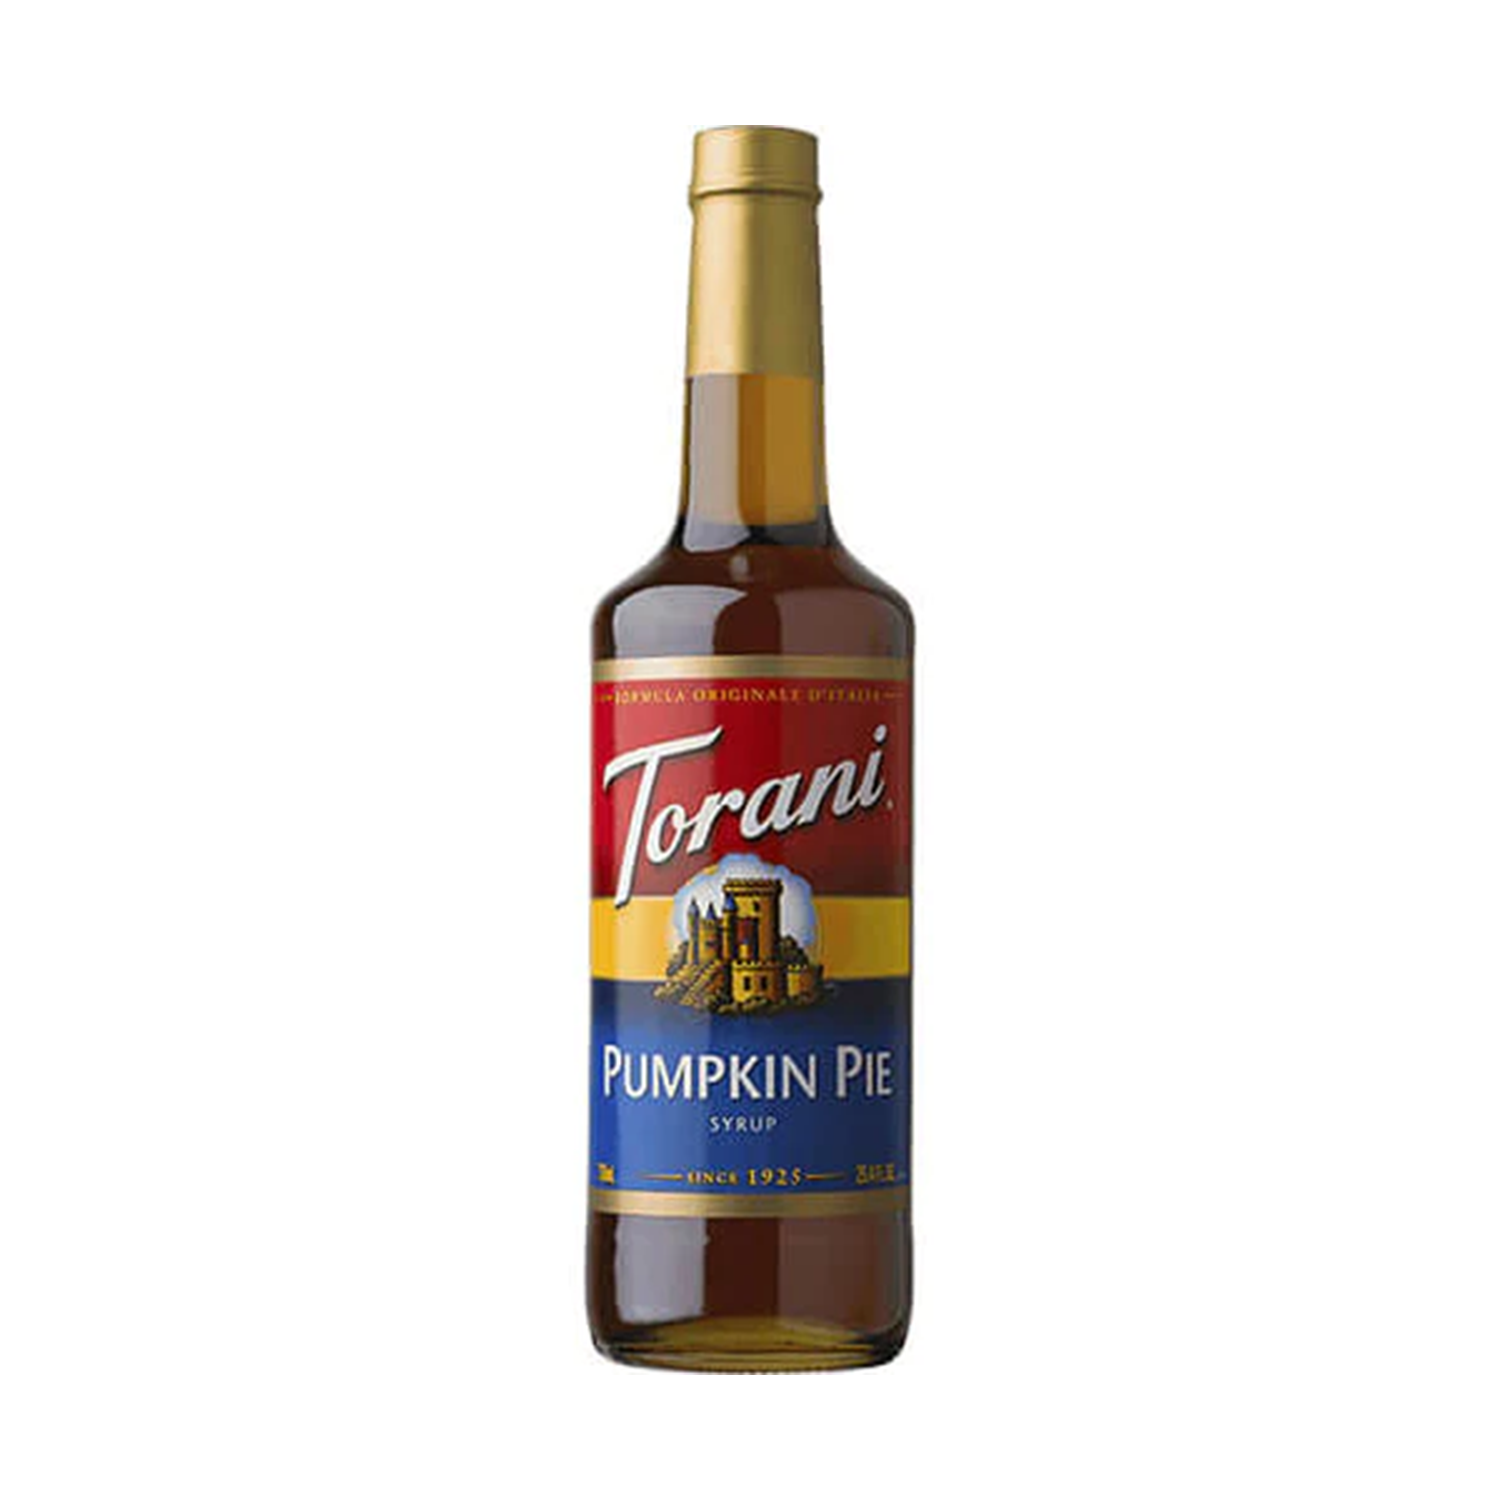 Torani Pumpkin Pie Syrup - Bottle (750mL)